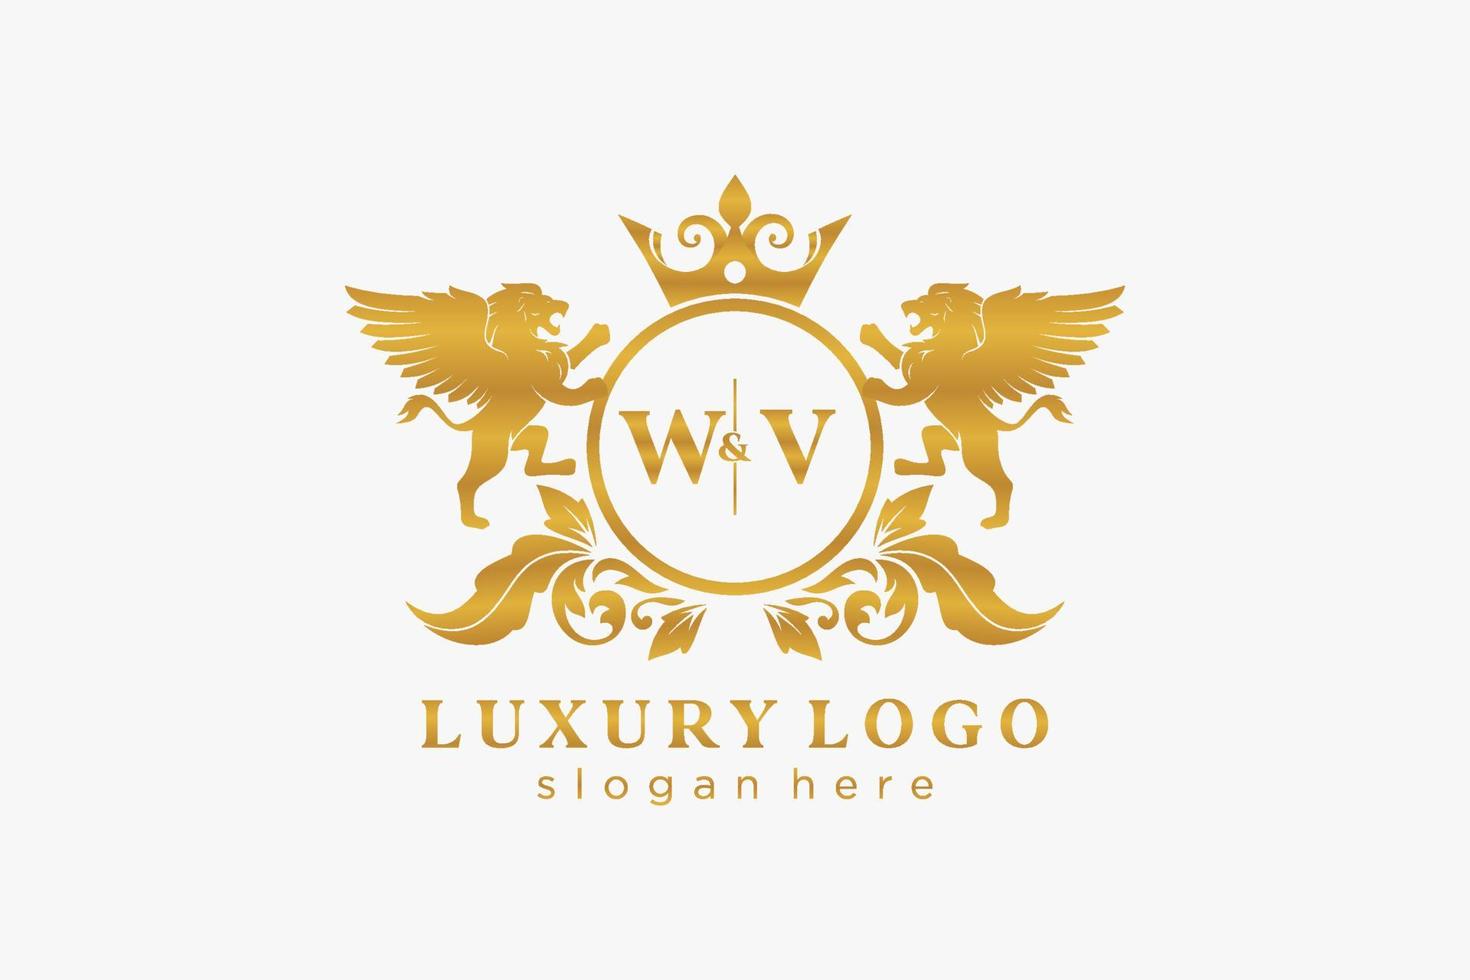 Anfangsbuchstabe wv lion royal Luxus-Logo-Vorlage in Vektorgrafiken für Restaurant, Lizenzgebühren, Boutique, Café, Hotel, heraldisch, Schmuck, Mode und andere Vektorillustrationen. vektor